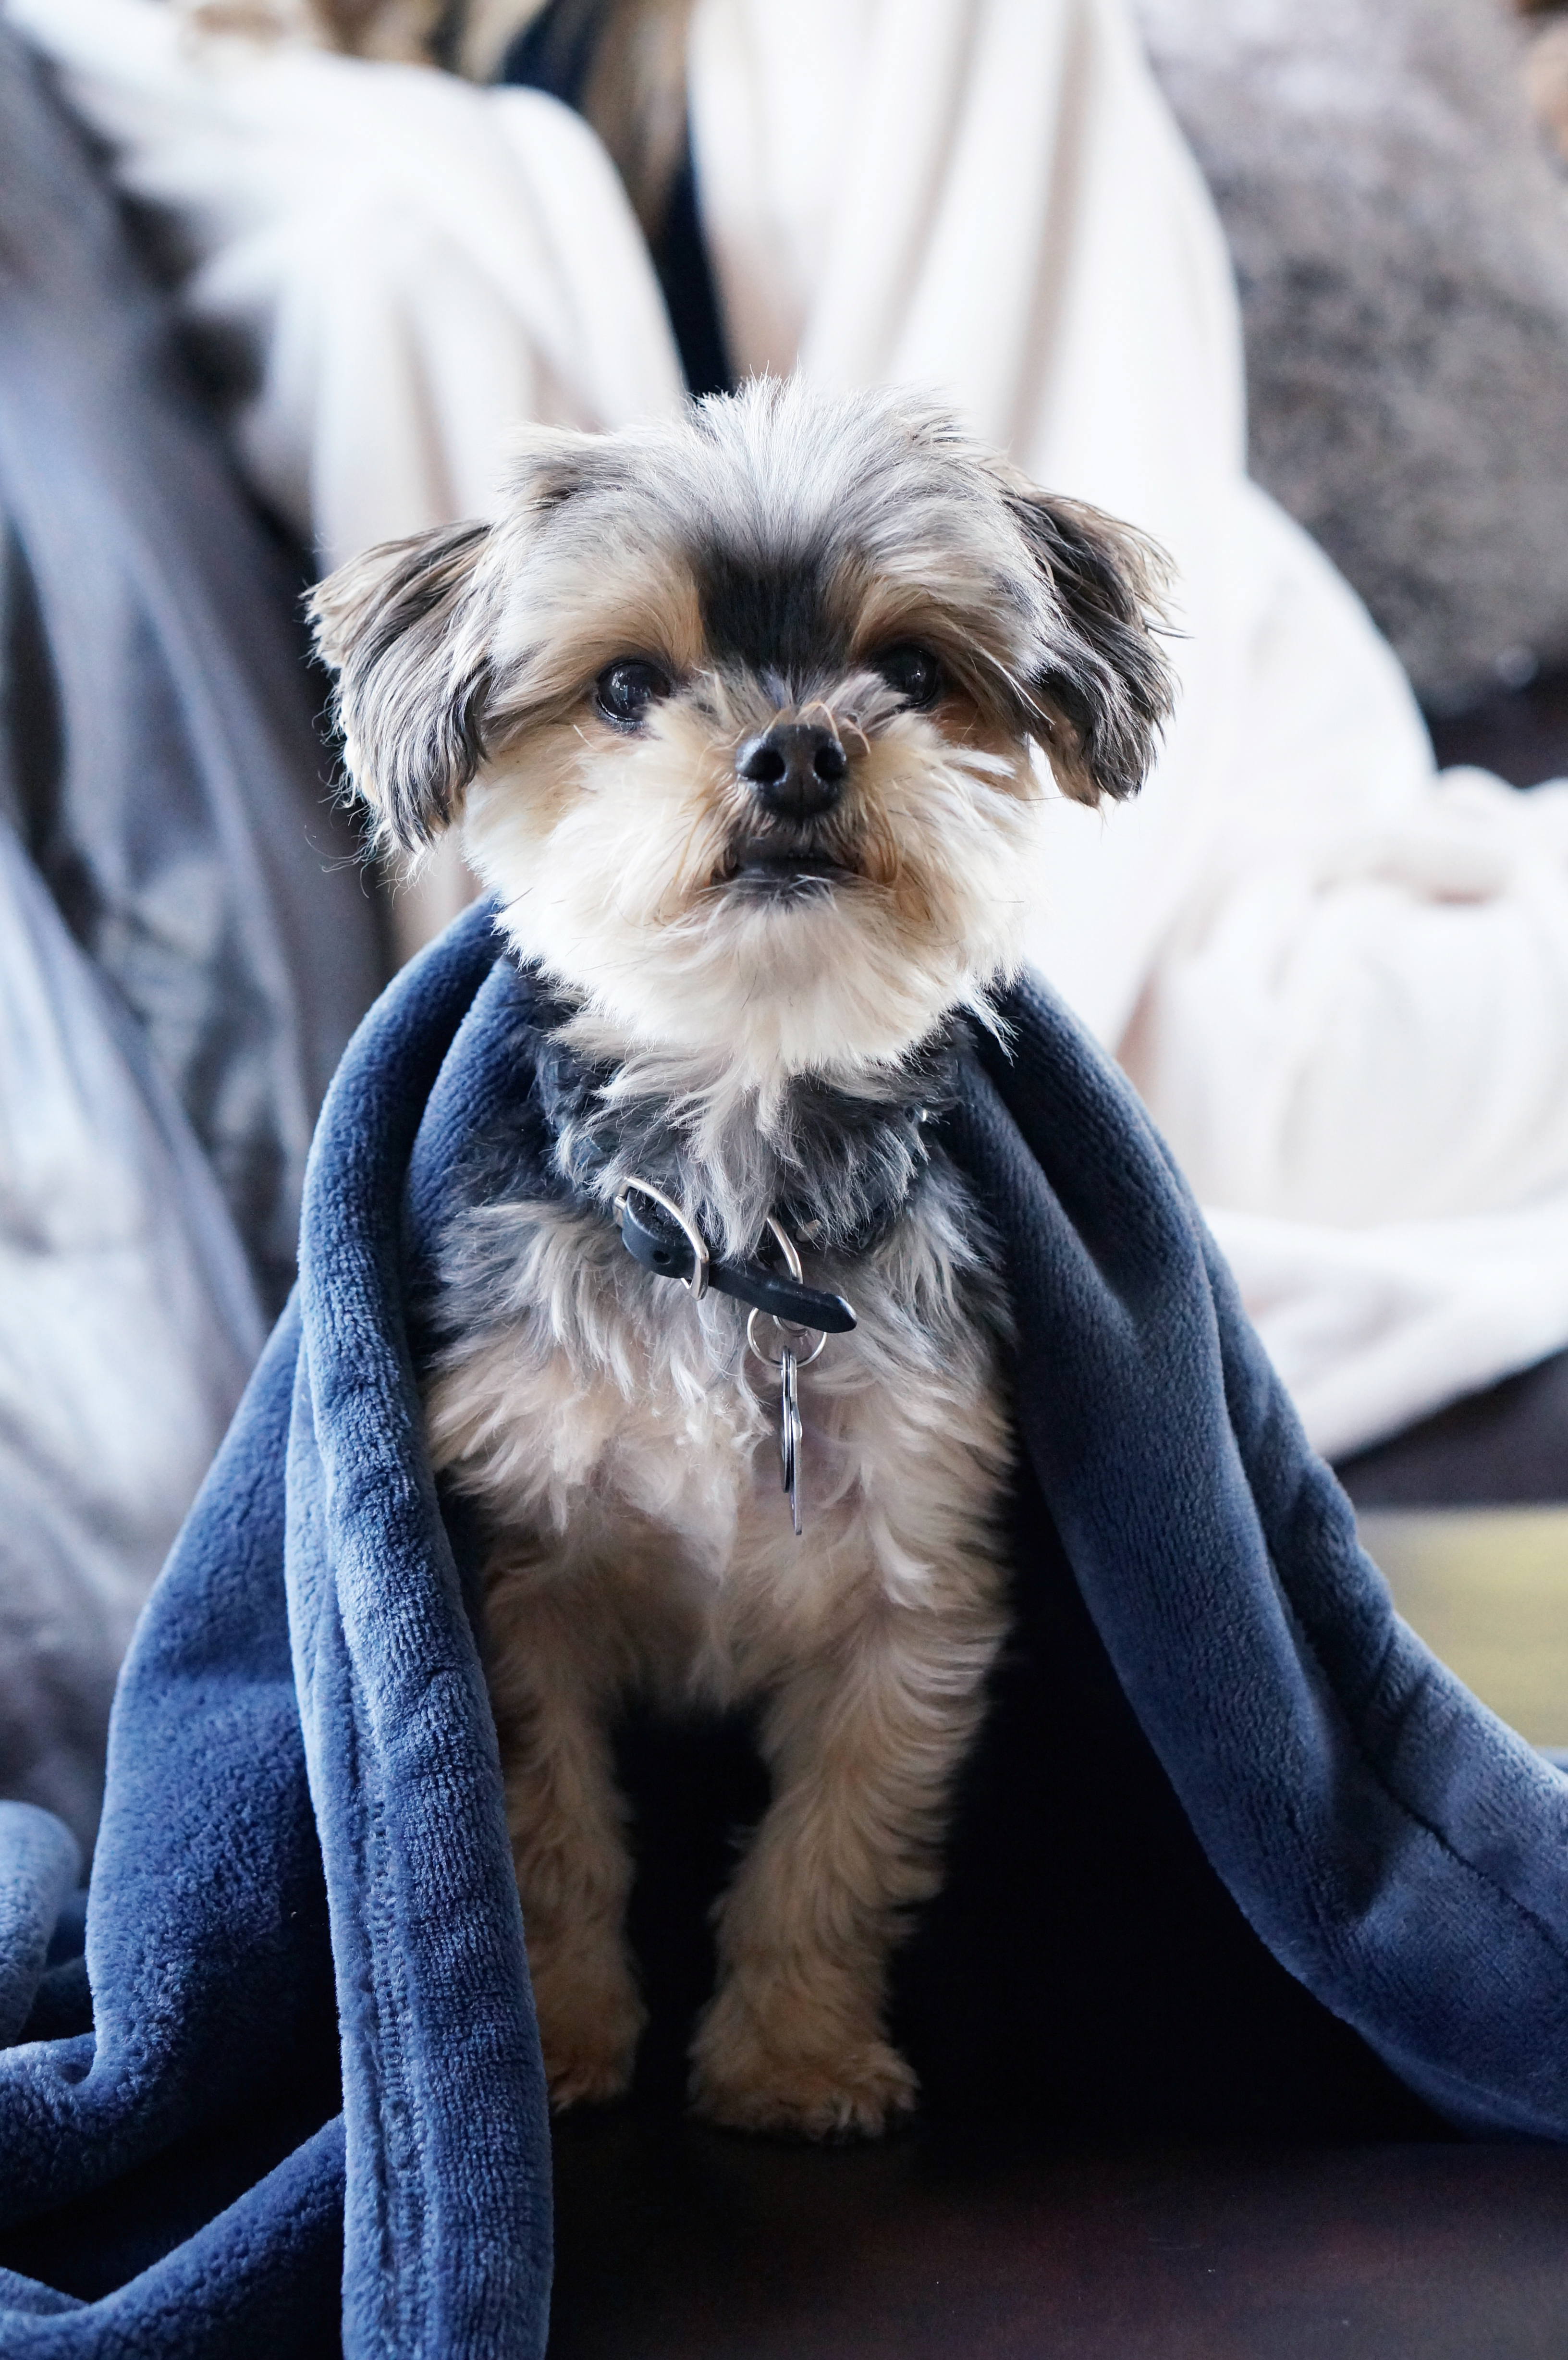 The American Blanket Company Fleece Dog Blanket